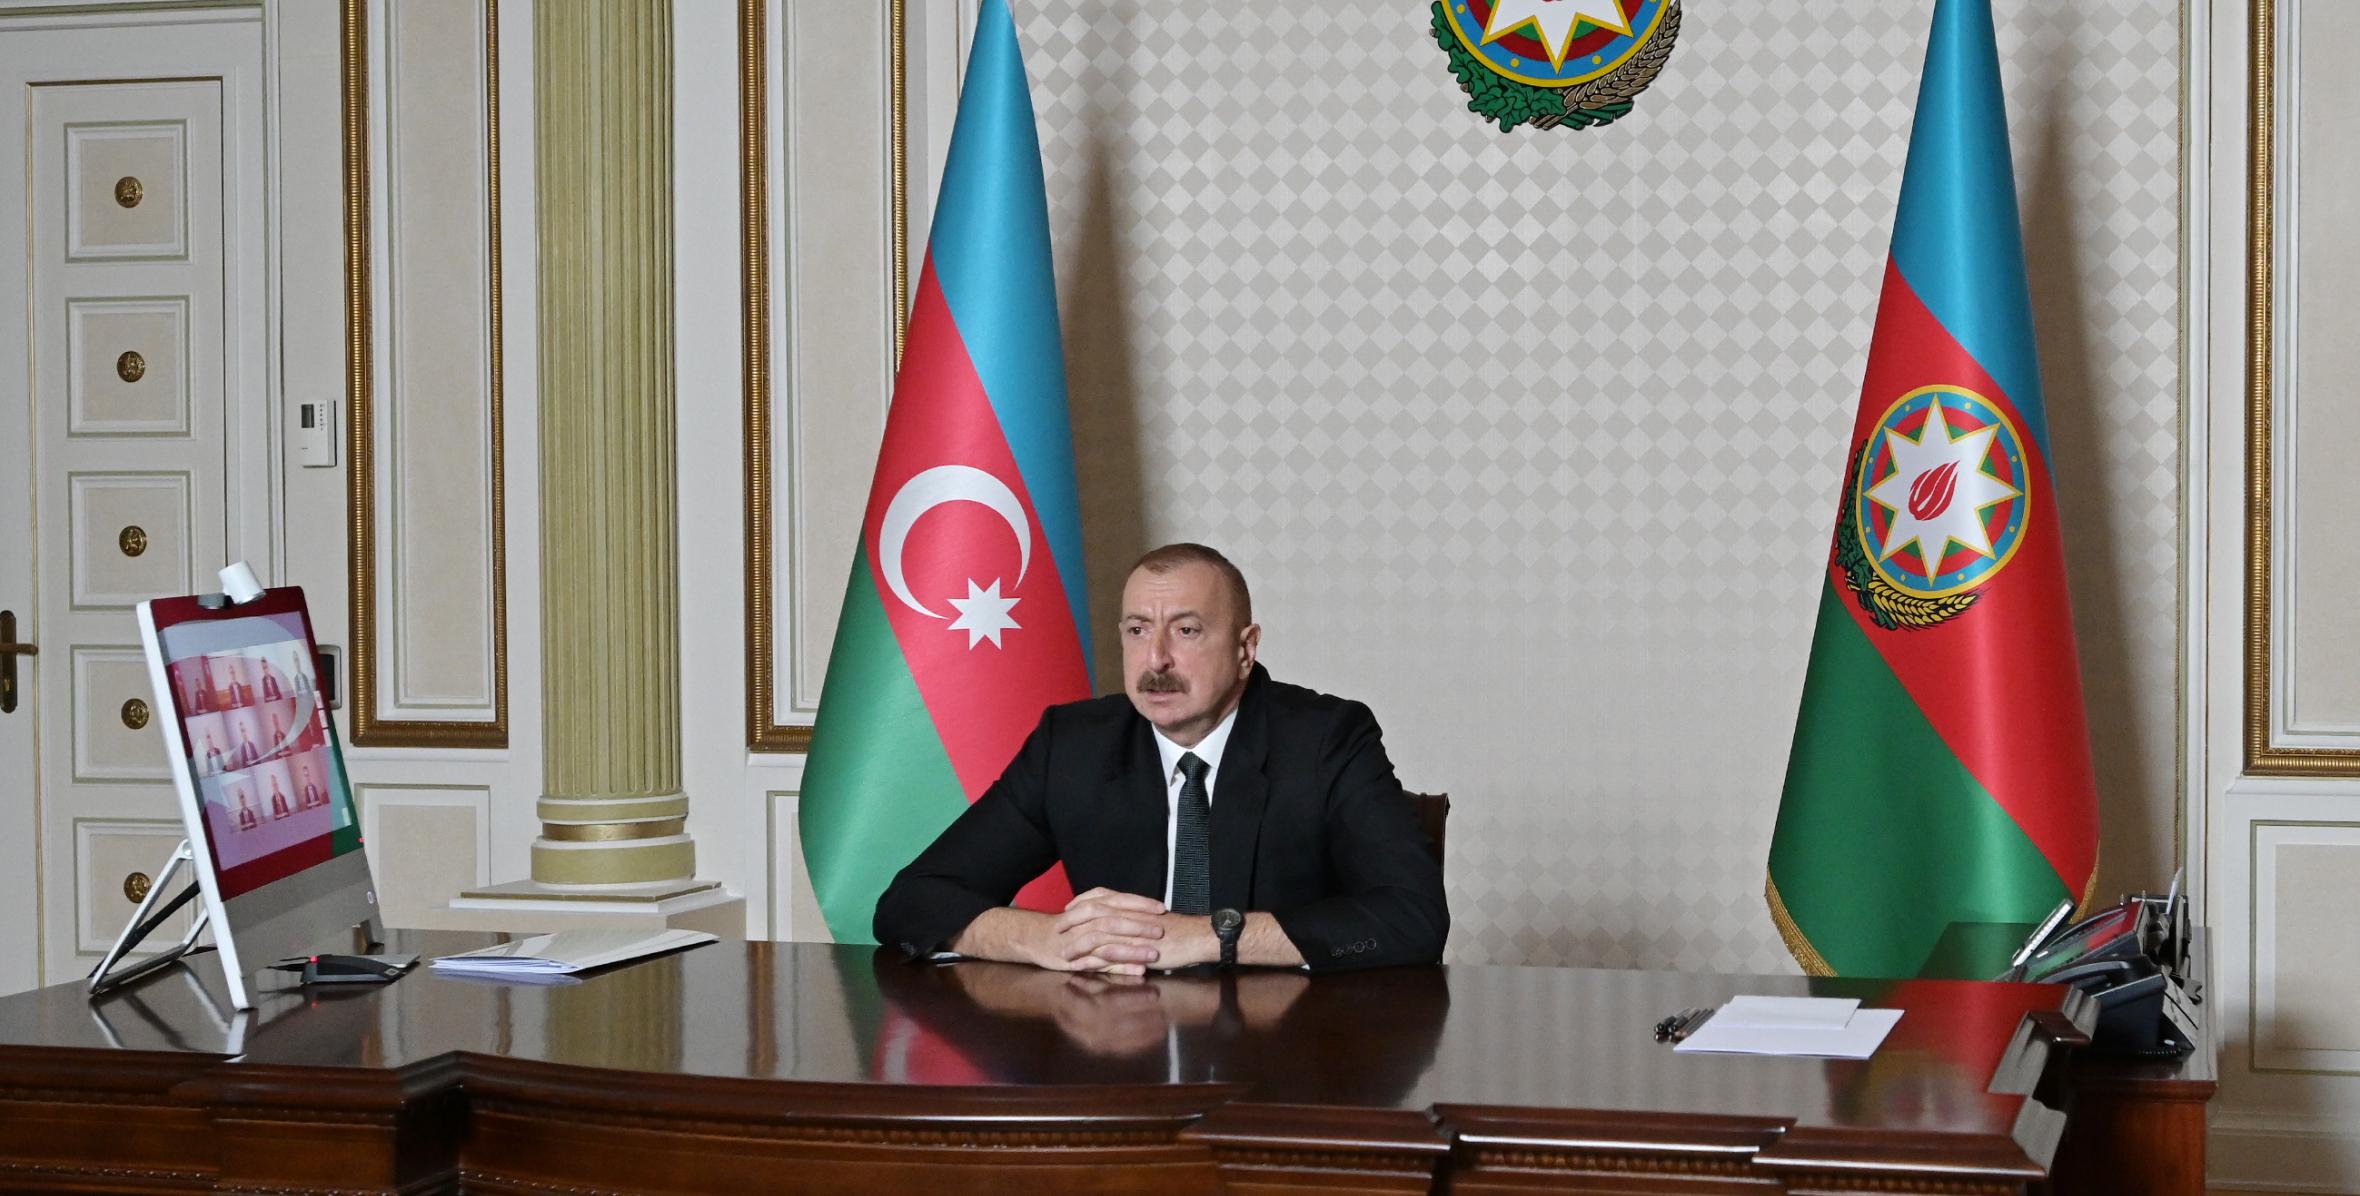 Под председательством Ильхама Алиева состоялось заседание Кабинета Министров, посвященное итогам социально-экономического развития в первом полугодии 2020 года и предстоящим задачам